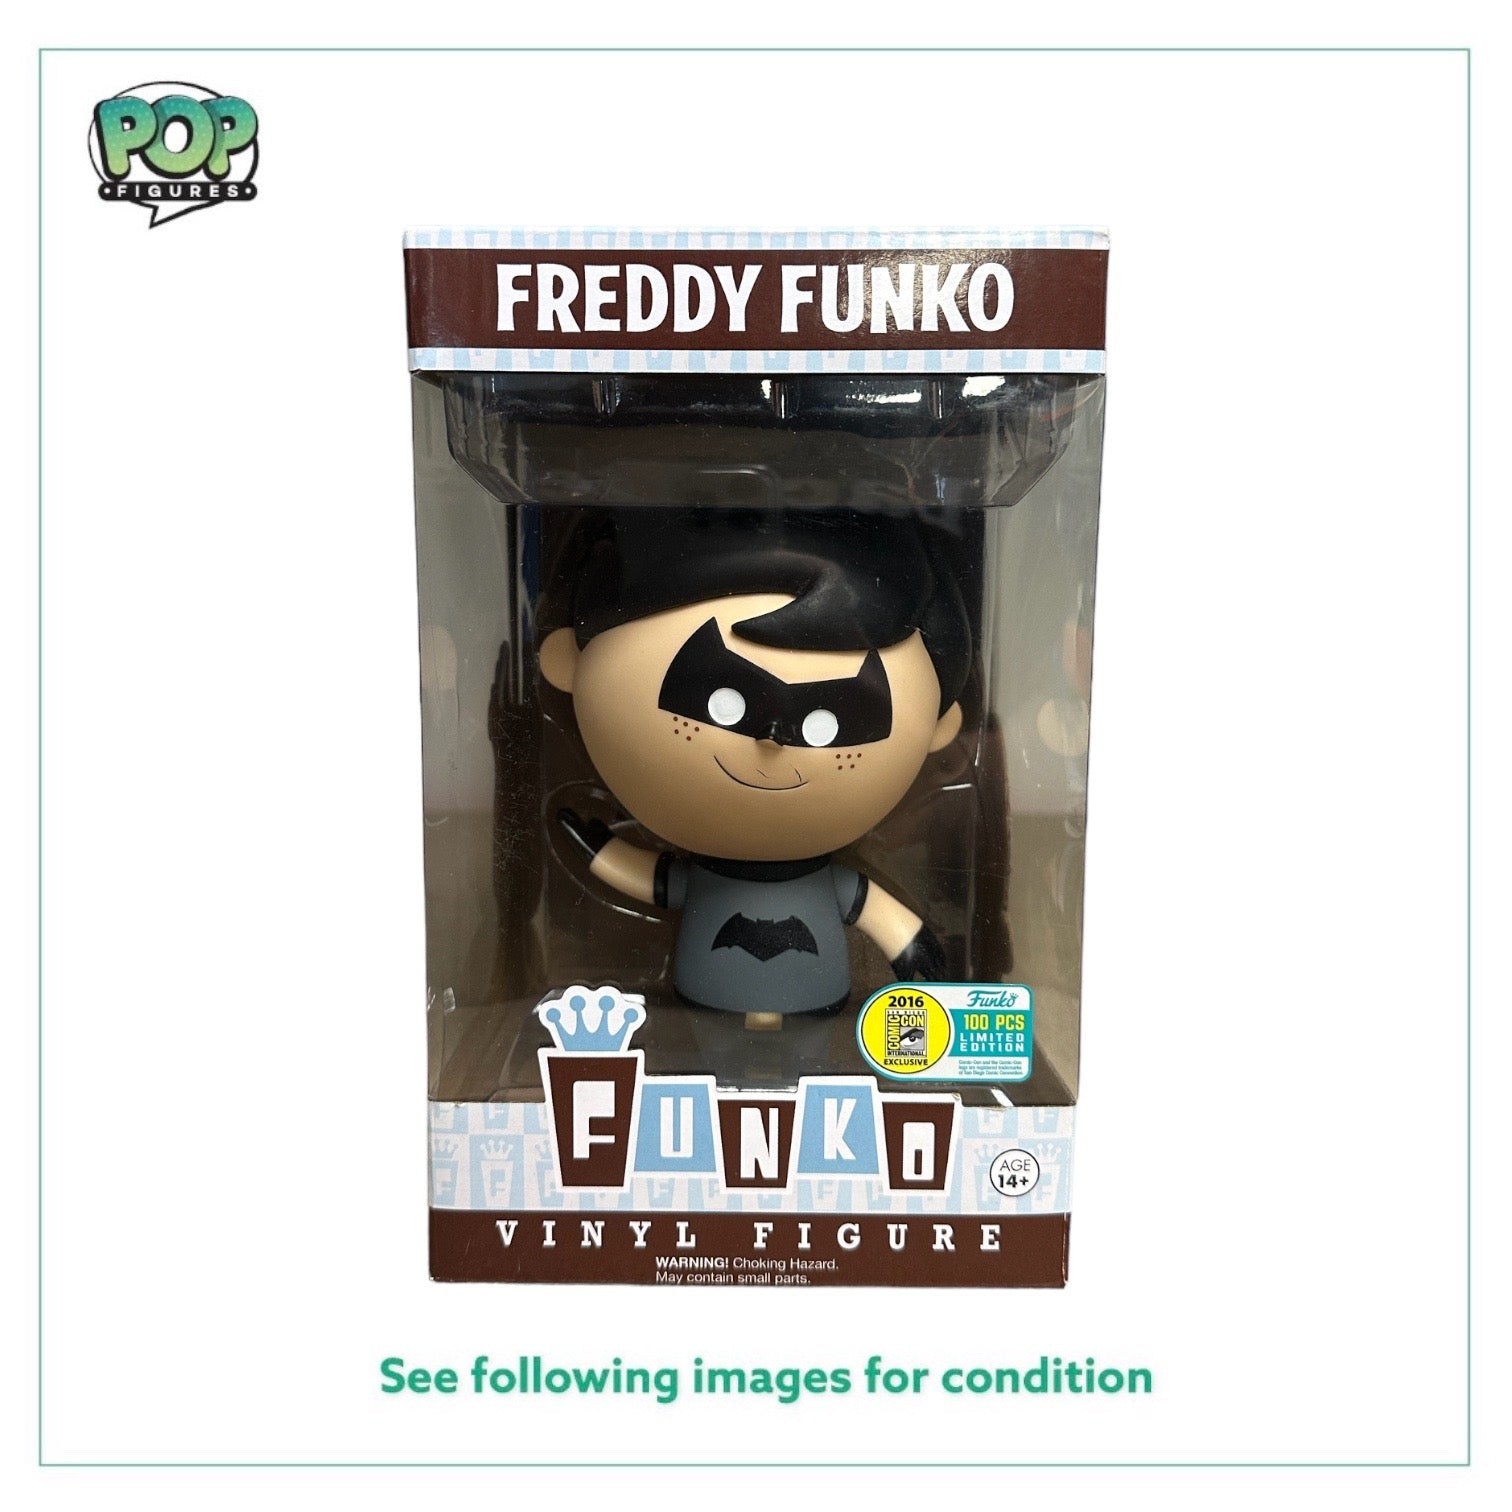 Freddy Funko as Batman Retro Vinyl Figure! - DC - SDCC 2016 Exclusive LE100 Pcs - Condition 7.5/10